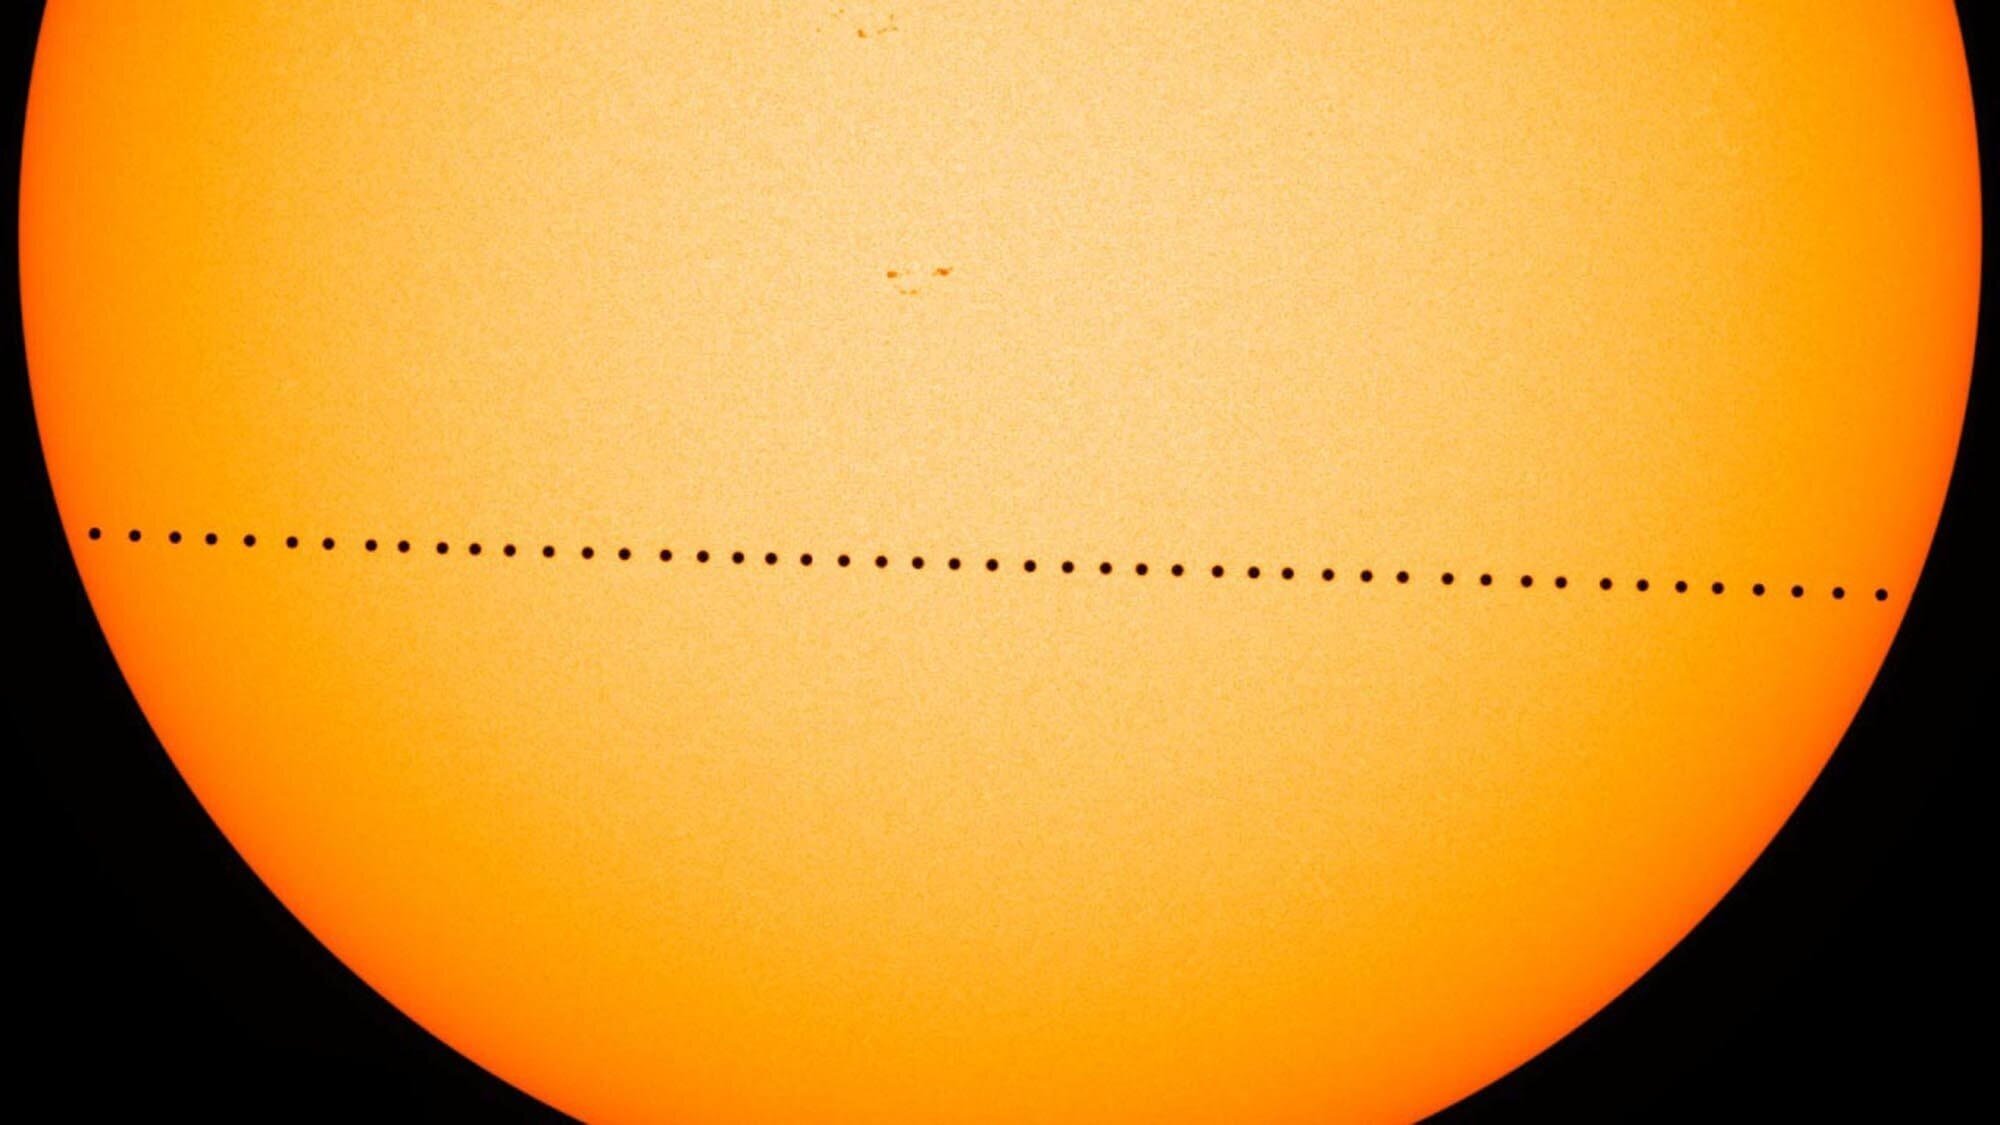 #Video | Tutto quello che dovete sapere sul transito di Mercurio sul disco del Sole